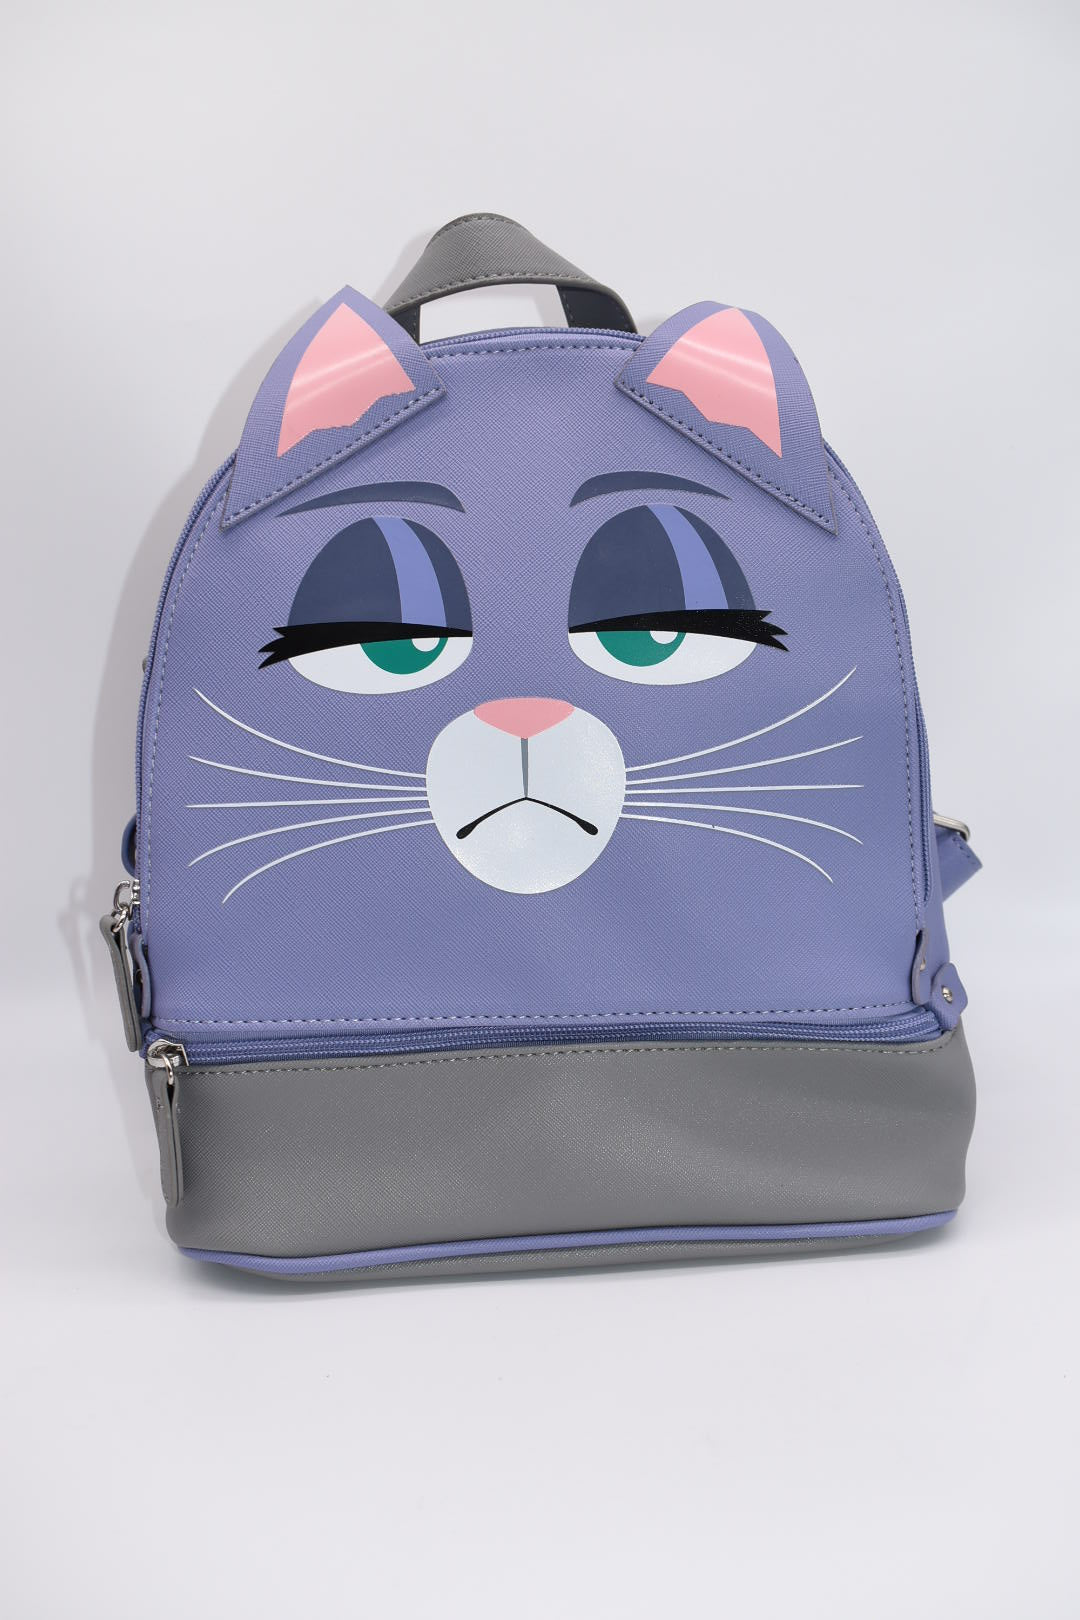 Universal Mini Backpack - Secret Life Of Pets Chloe